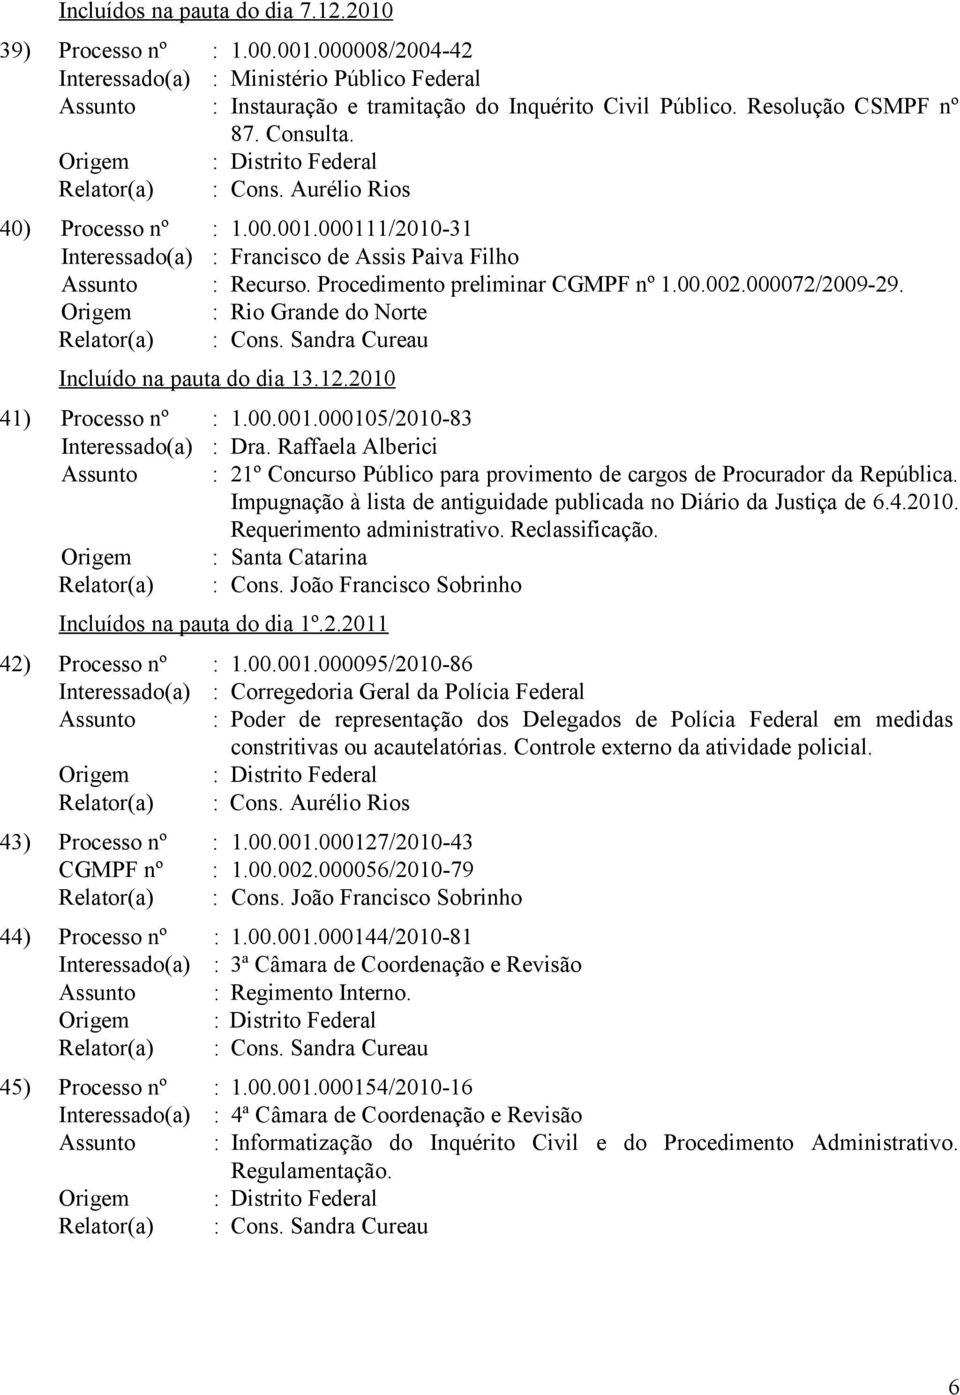 000105/2010-83 Interessado(a) : Dra. Raffaela Alberici Assunto : 21º Concurso Público para provimento de cargos de Procurador da República.